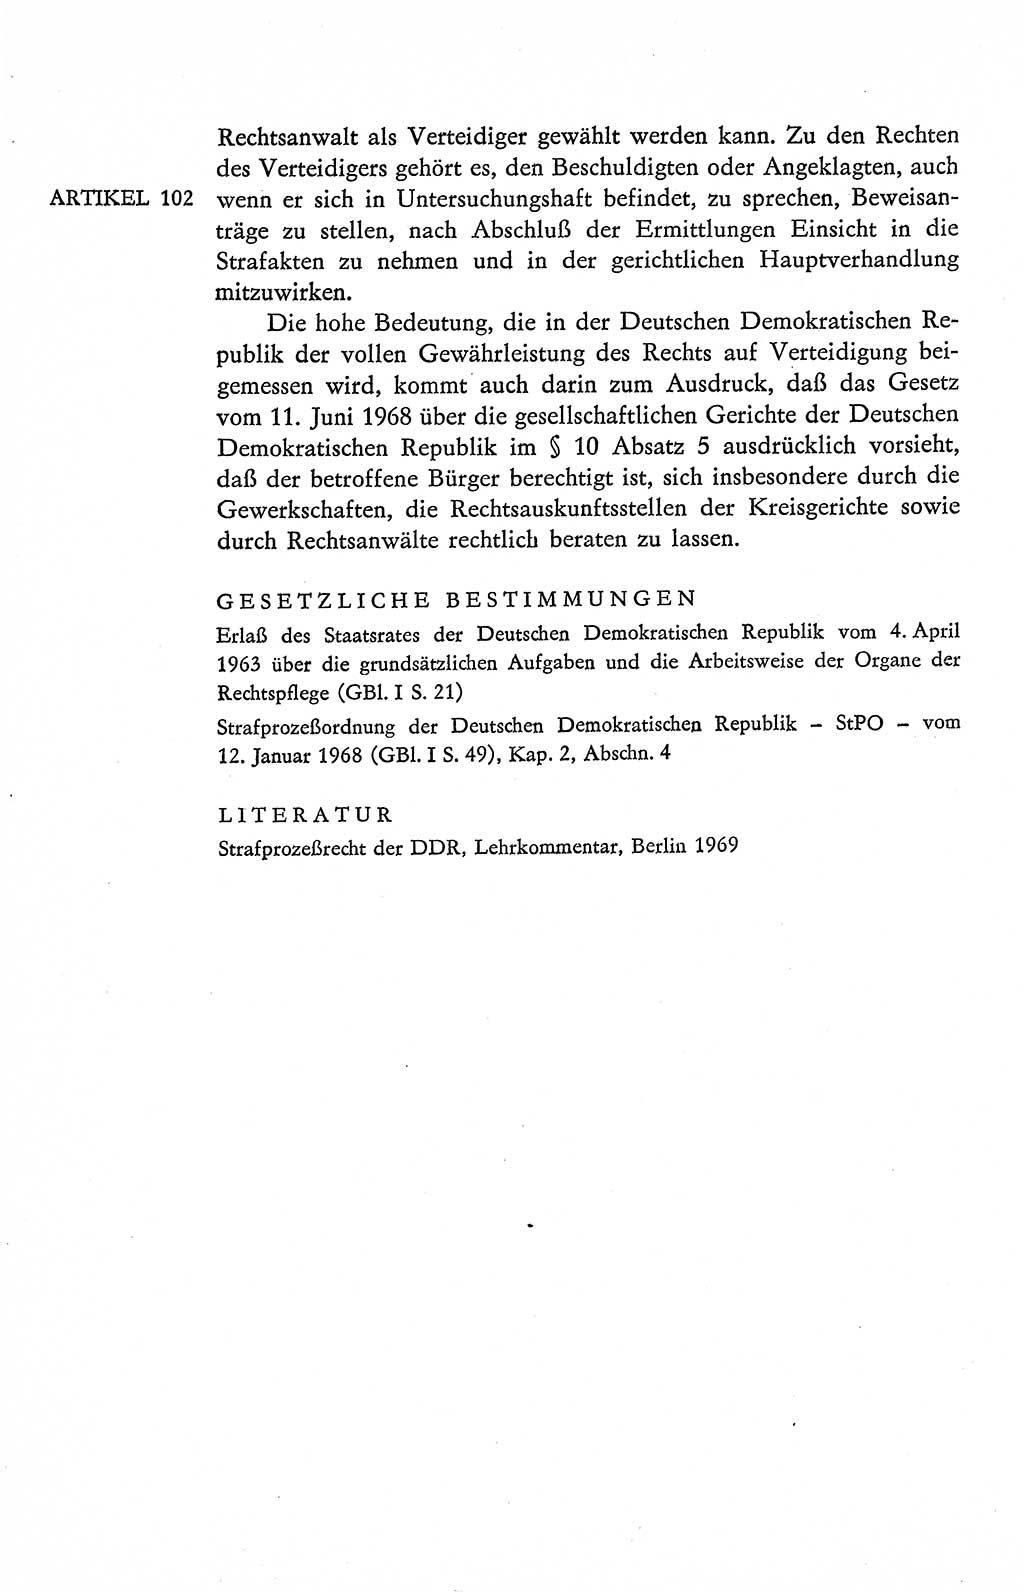 Verfassung der Deutschen Demokratischen Republik (DDR), Dokumente, Kommentar 1969, Band 2, Seite 488 (Verf. DDR Dok. Komm. 1969, Bd. 2, S. 488)